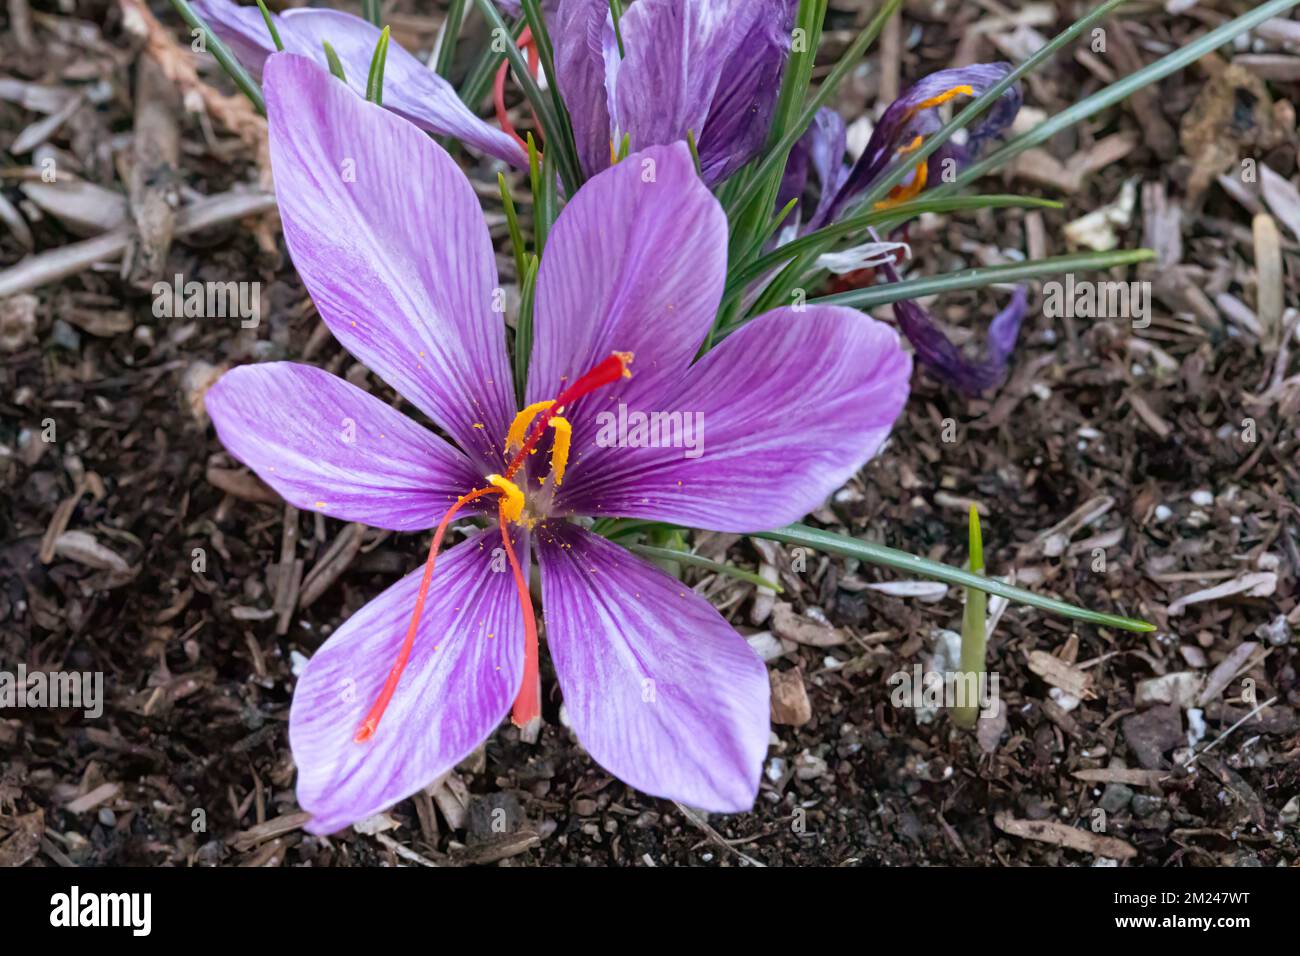 Croco allo zafferano (Crocus sativus), AKA: Croco autunnale in fiore. I suoi stigmi sono conosciuti come lo zafferano delle spezie. Foto Stock